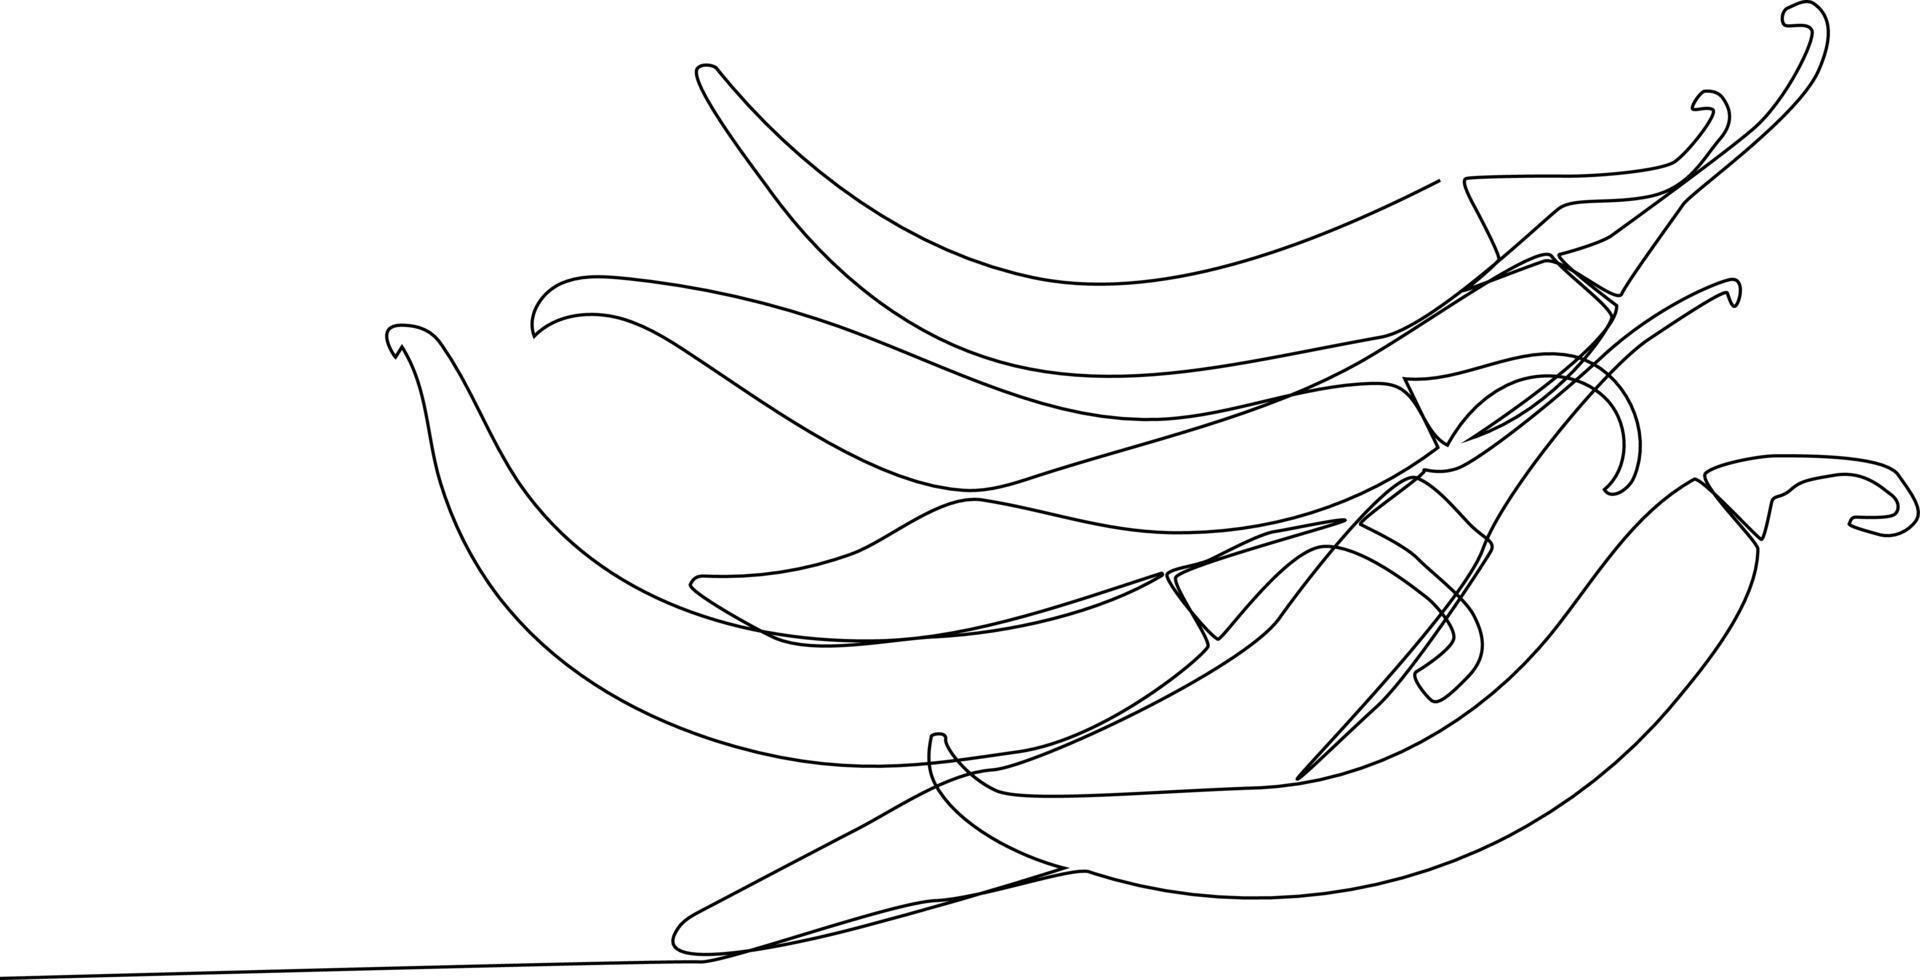 enda en linje teckning lugg av chilipeppar i de kök. örter och kryddor begrepp. kontinuerlig linje teckning design grafisk vektor illustration.